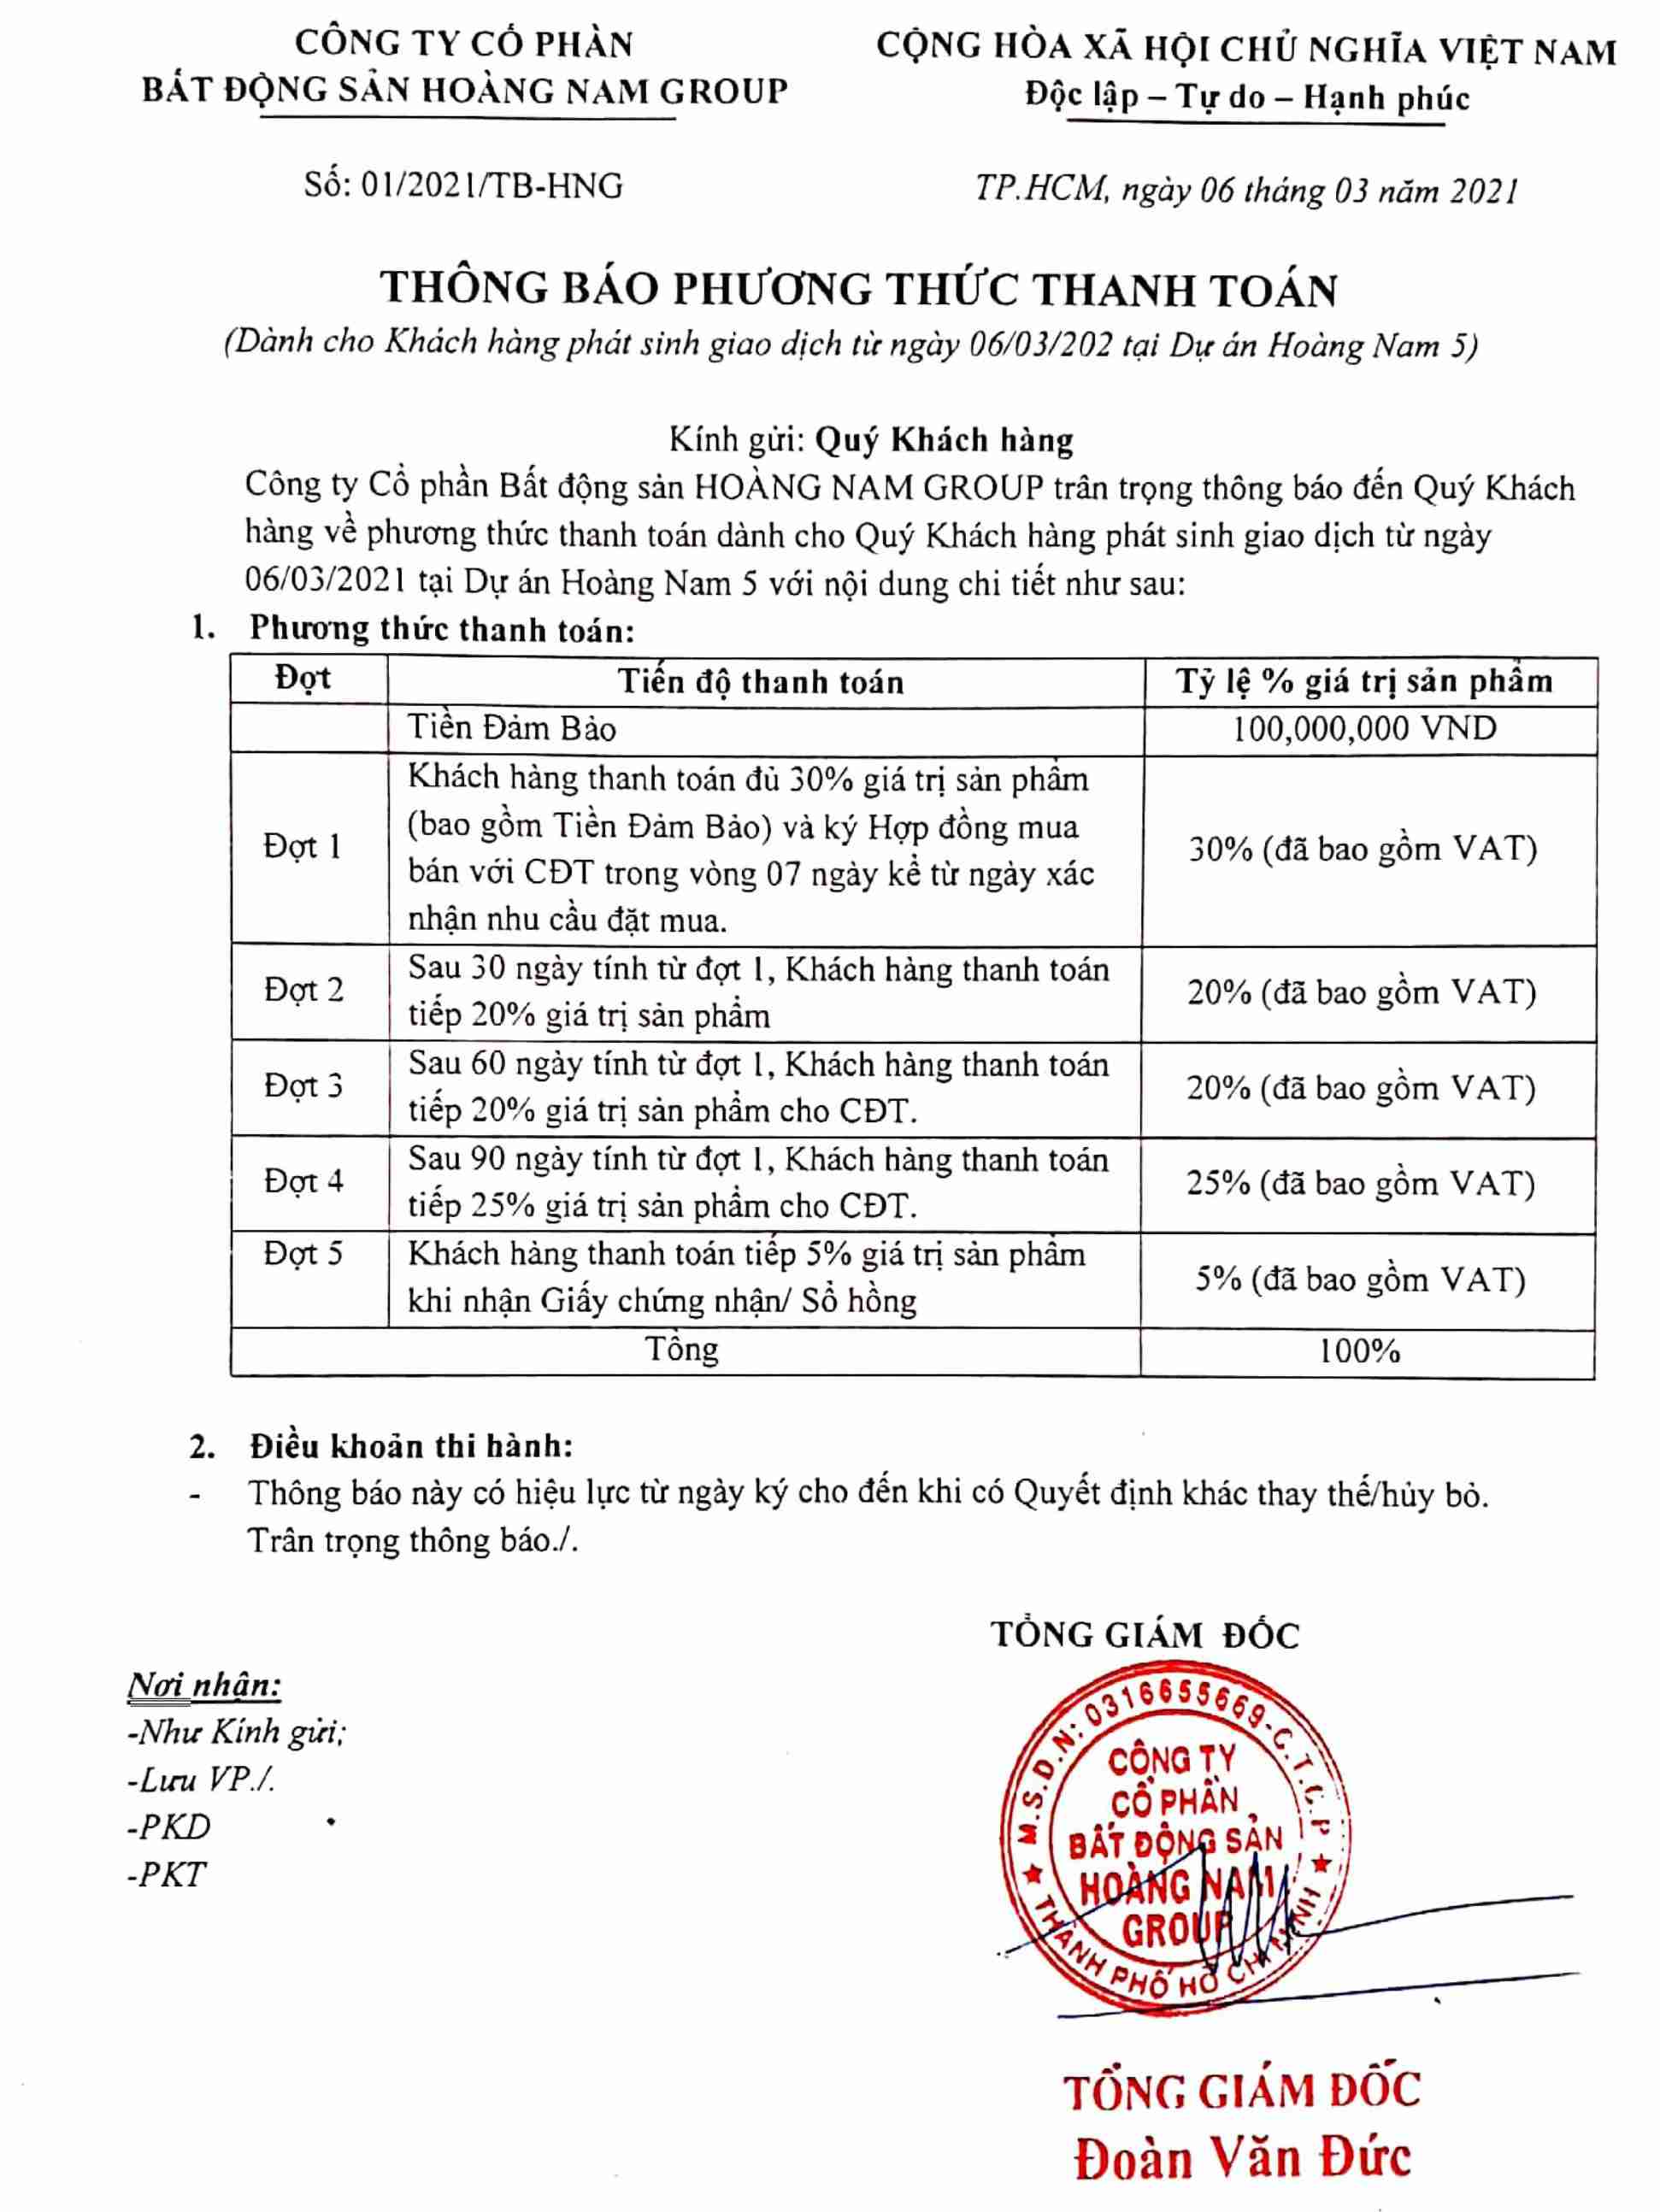 Tiến độ thanh toán dự án nhà phố Hoàng Nam 5